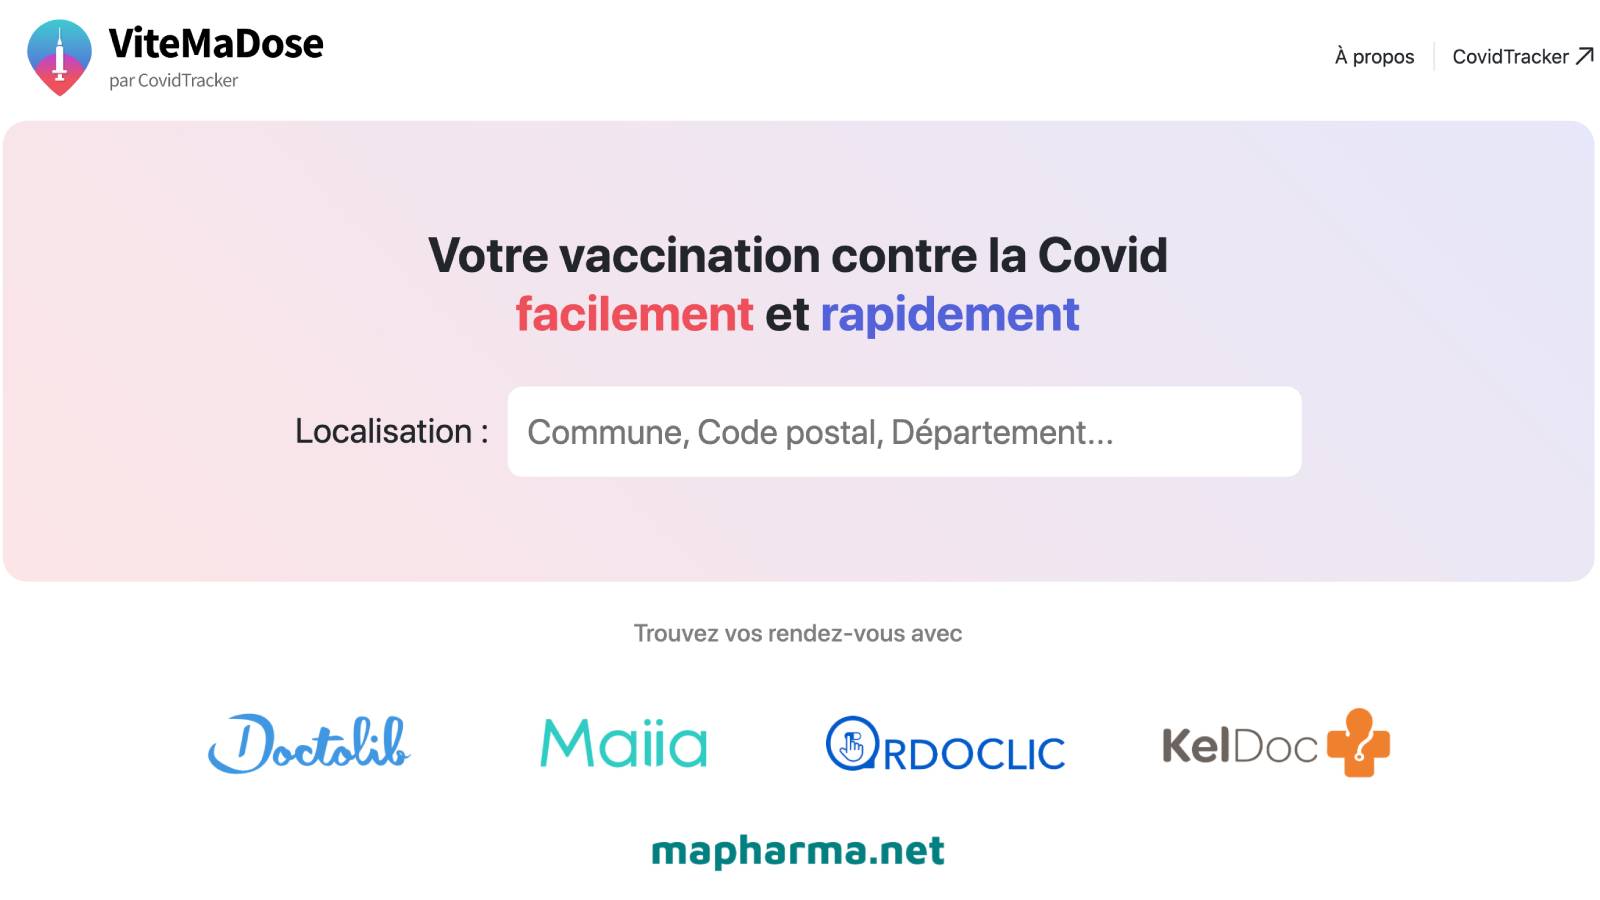 Maiia, MeSoigner, Keldoc... Les alternatives à Doctolib pour prendre un rendez-vous pour la 3e dose